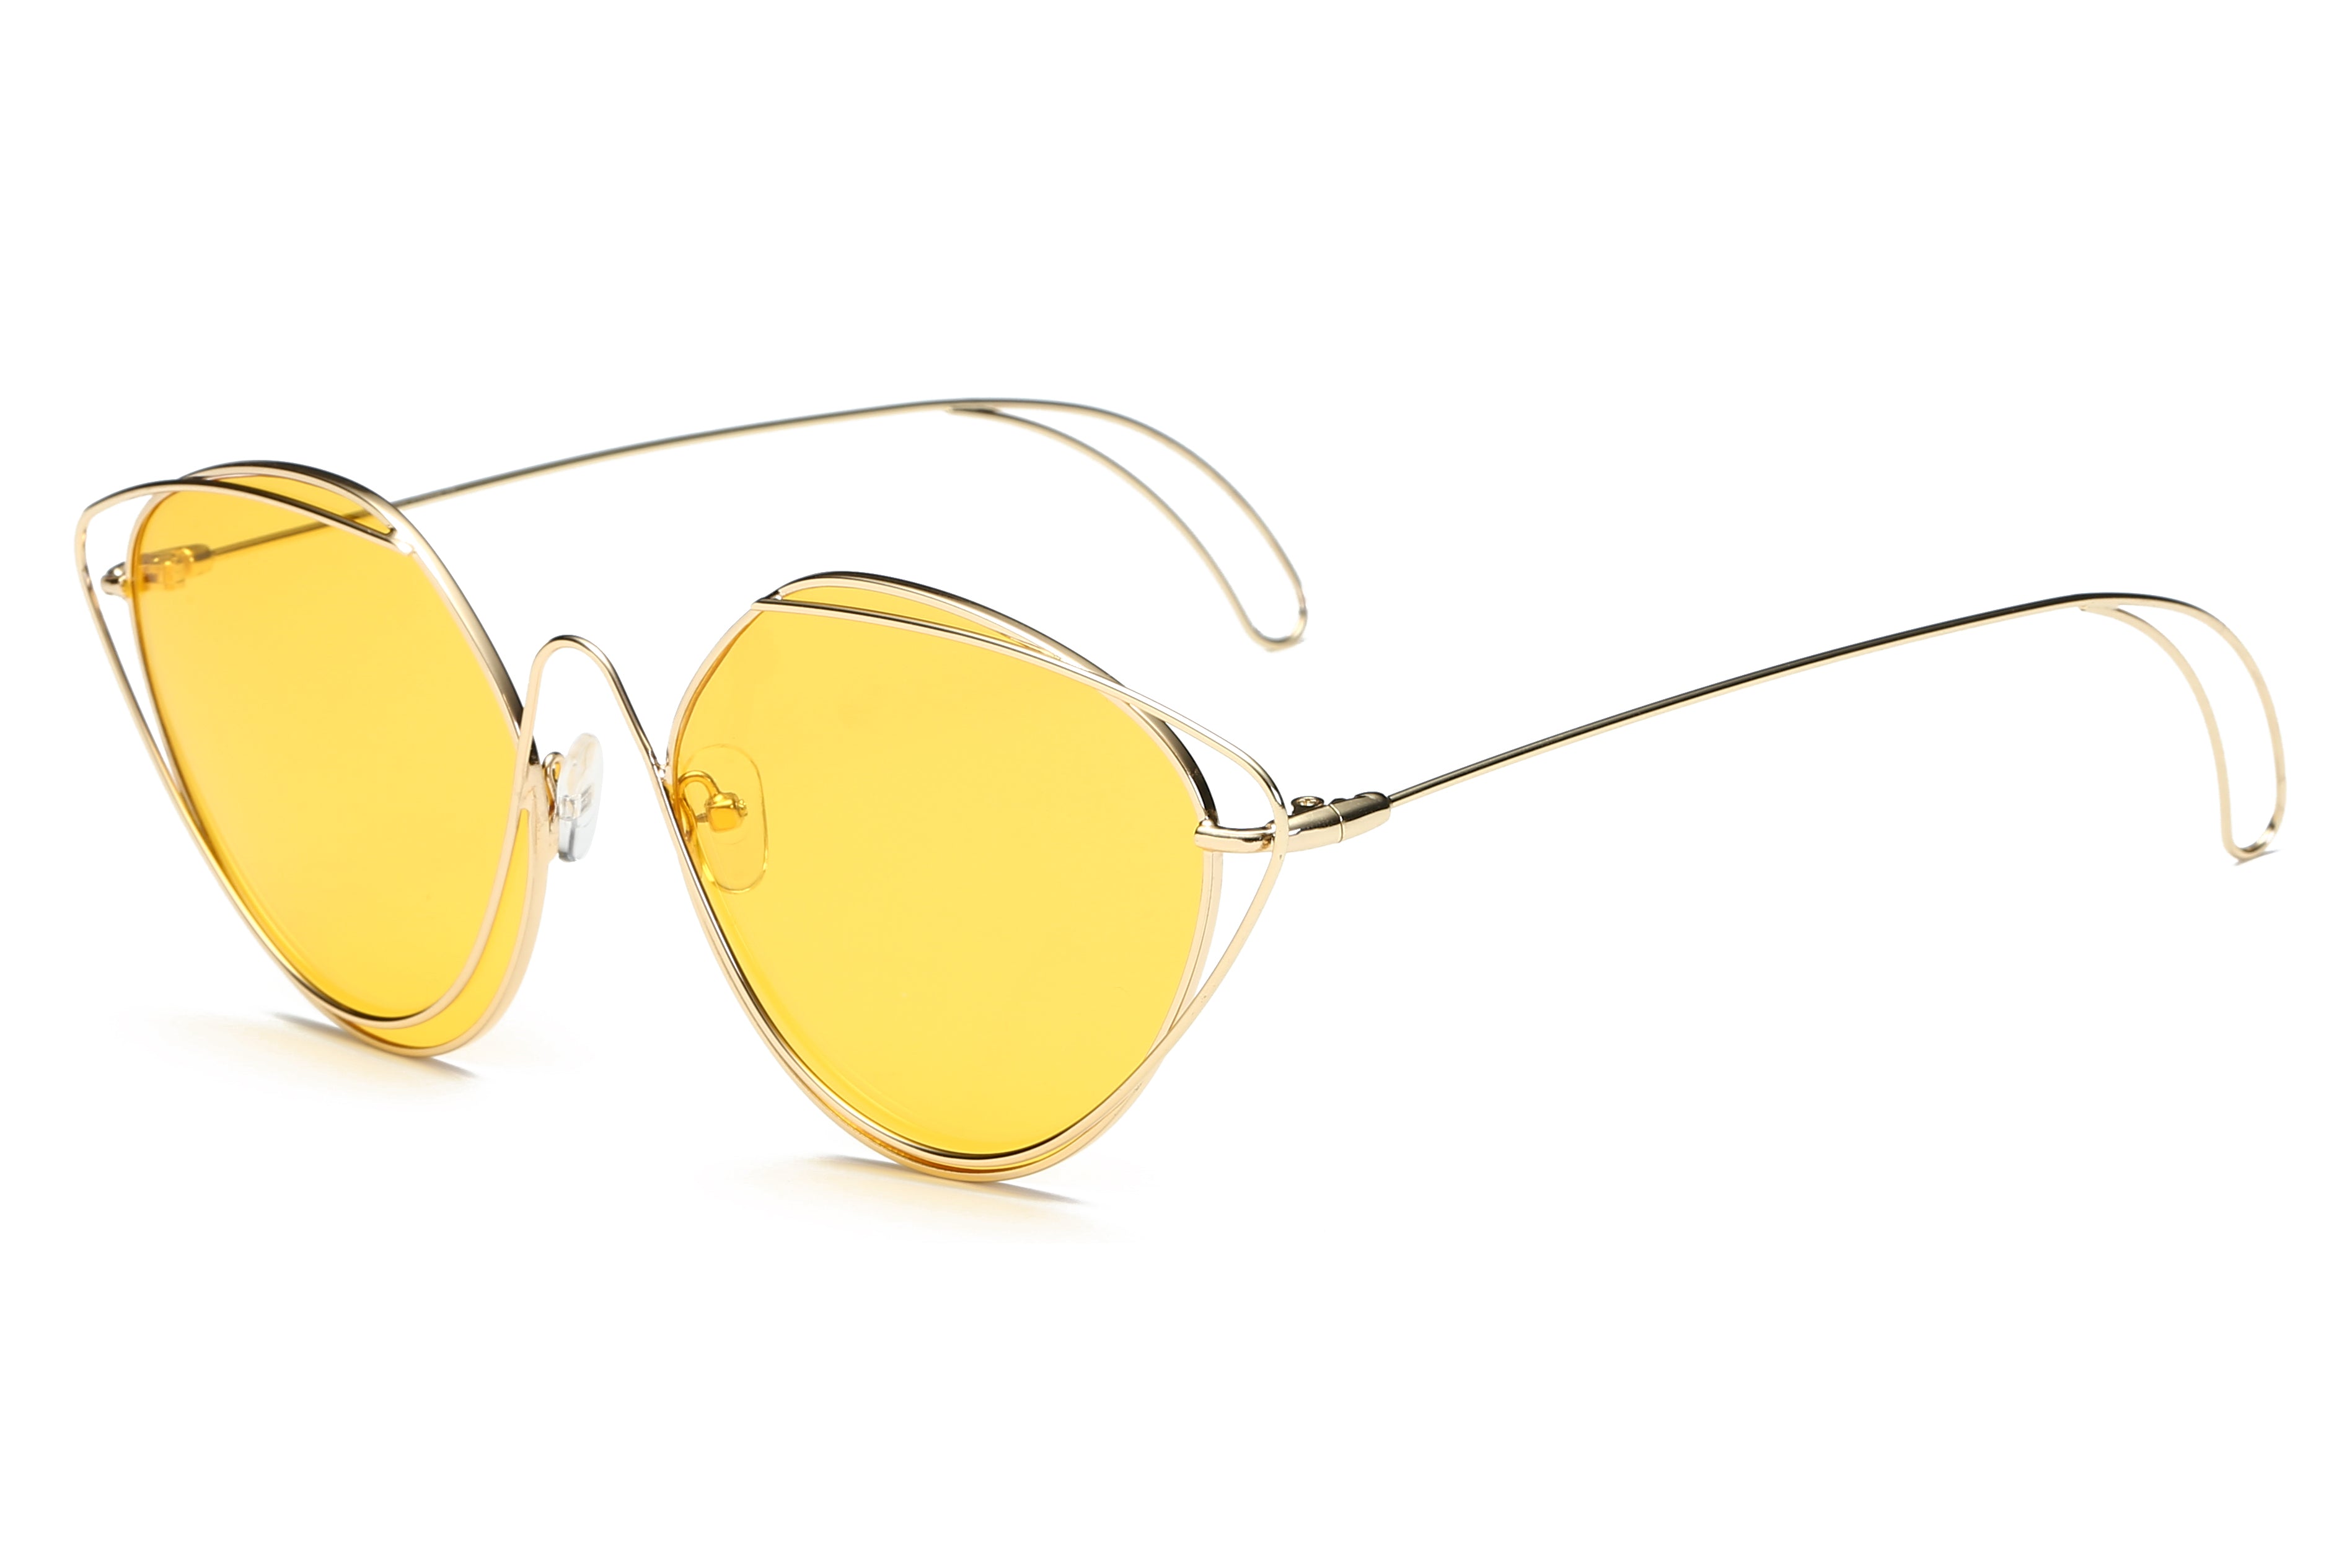 S2045 - Women Fashion Round Cat Eye SUNGLASSES Yellow